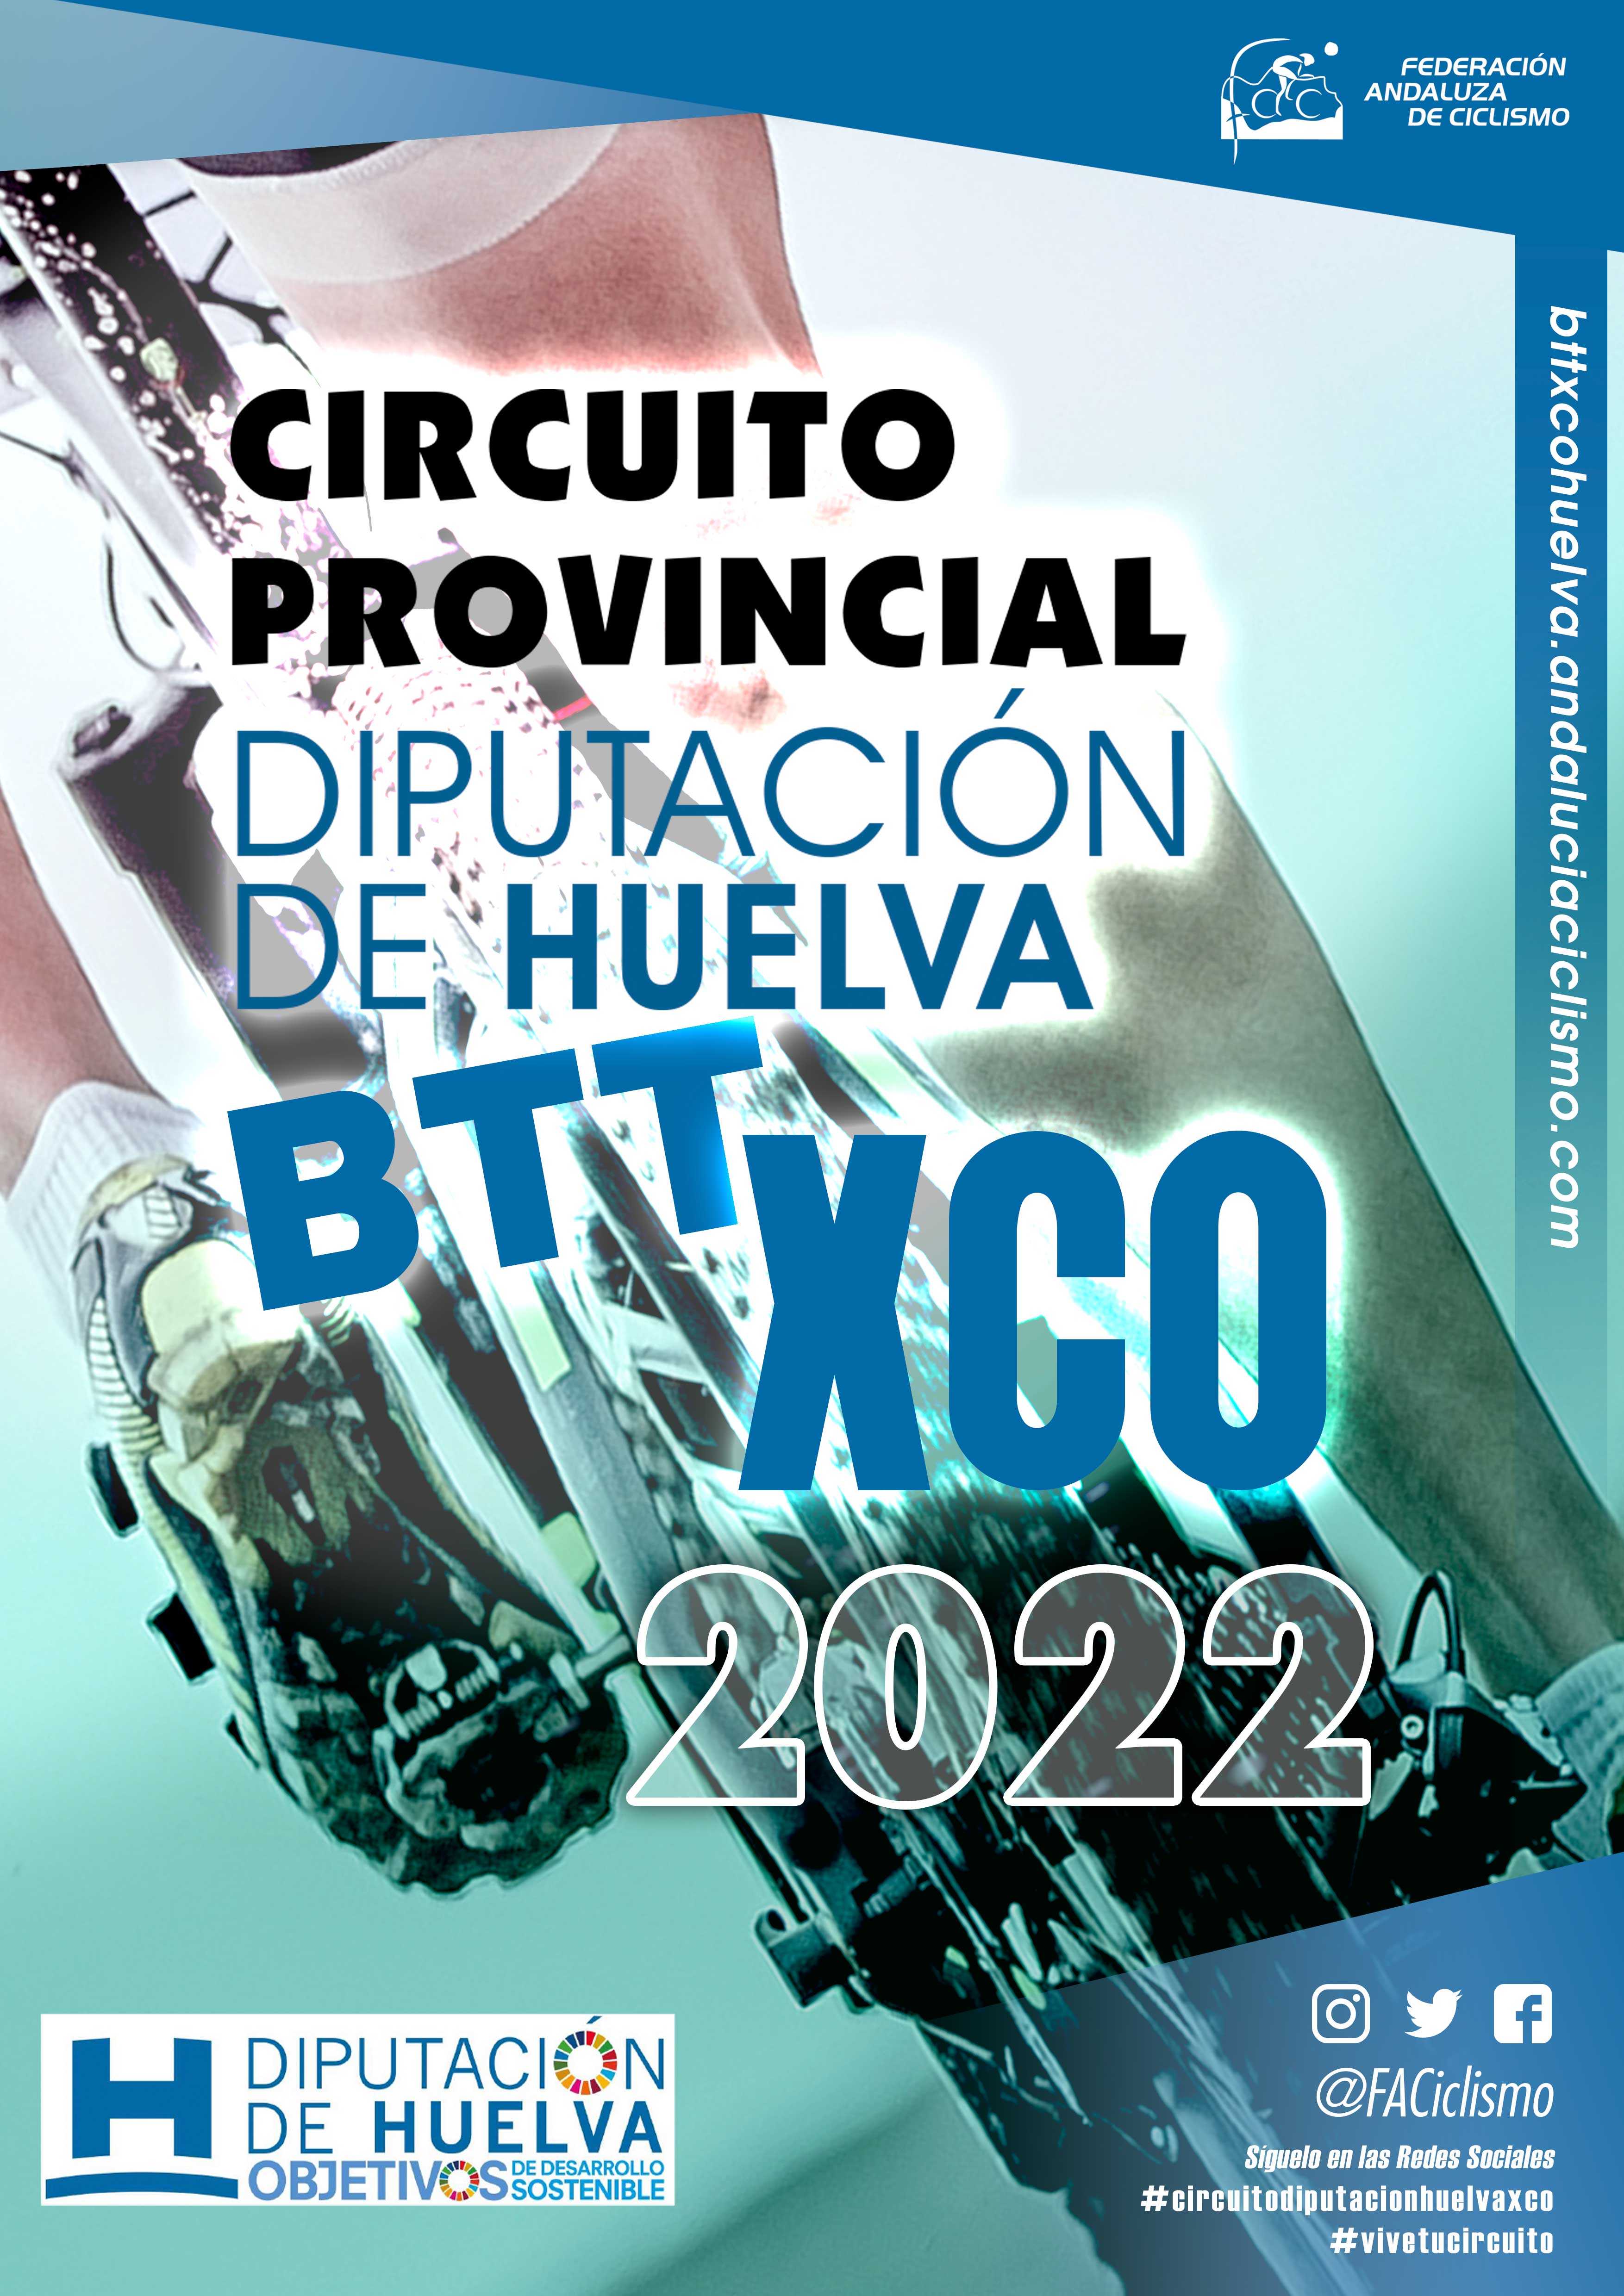 El Circuito Diputación Huelva BTT XCO 2022 regresará en Cartaya